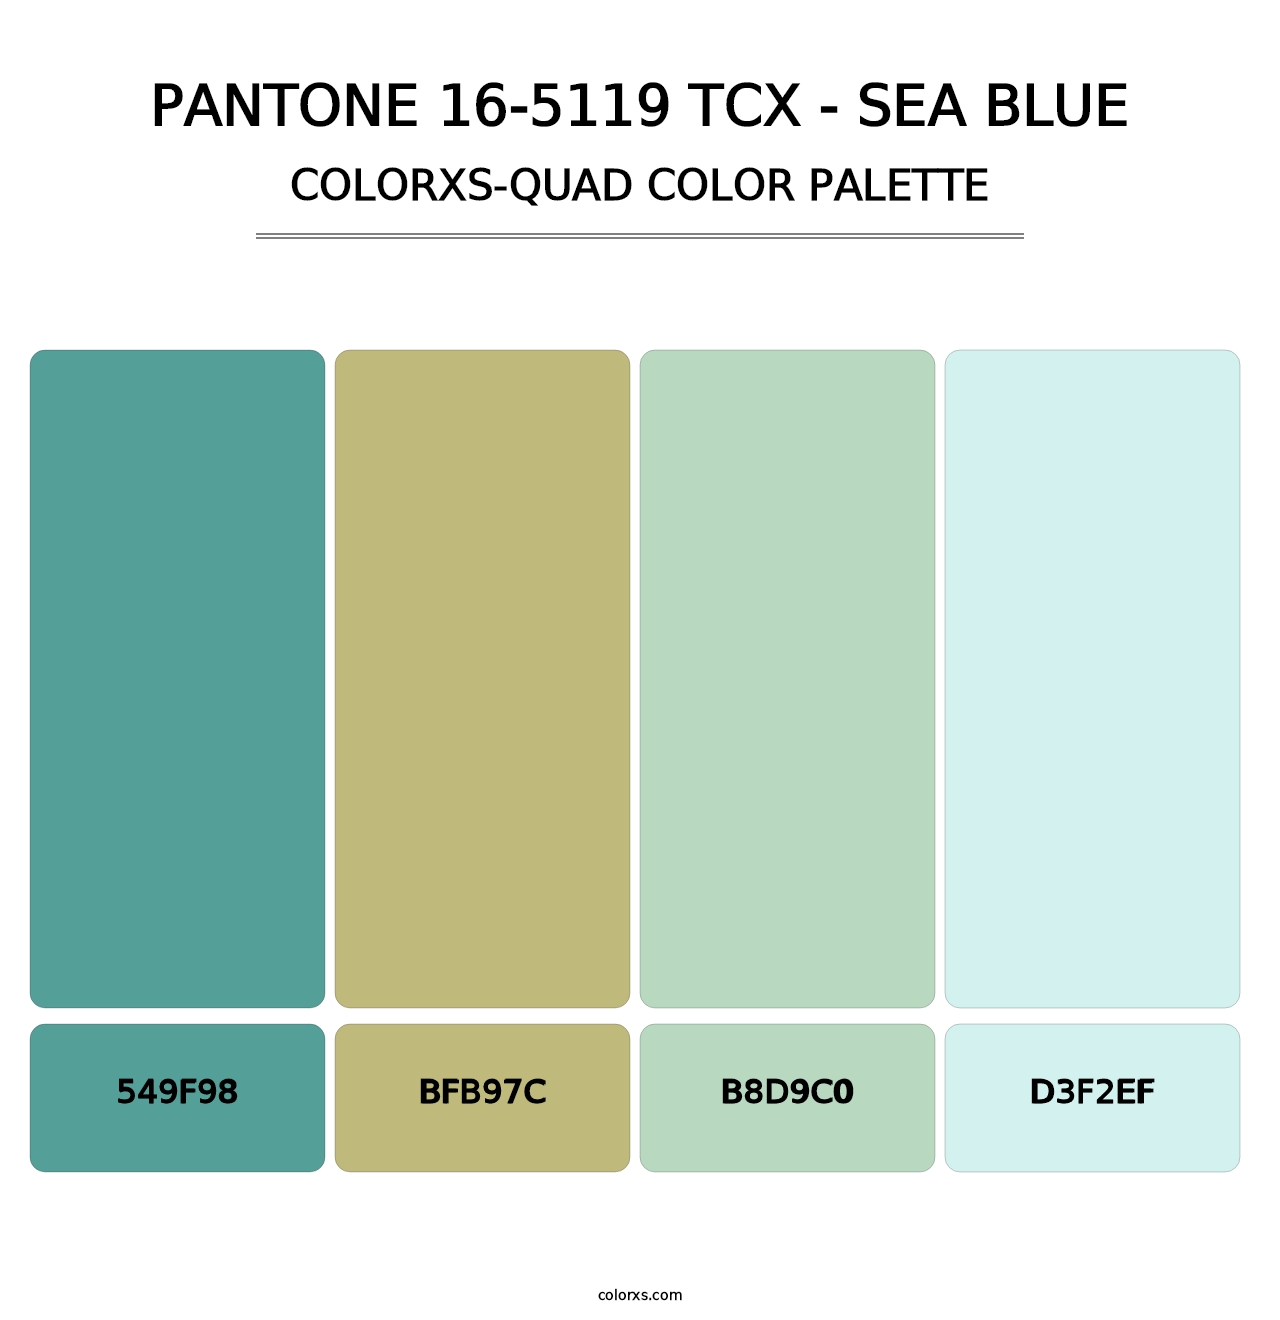 PANTONE 16-5119 TCX - Sea Blue - Colorxs Quad Palette